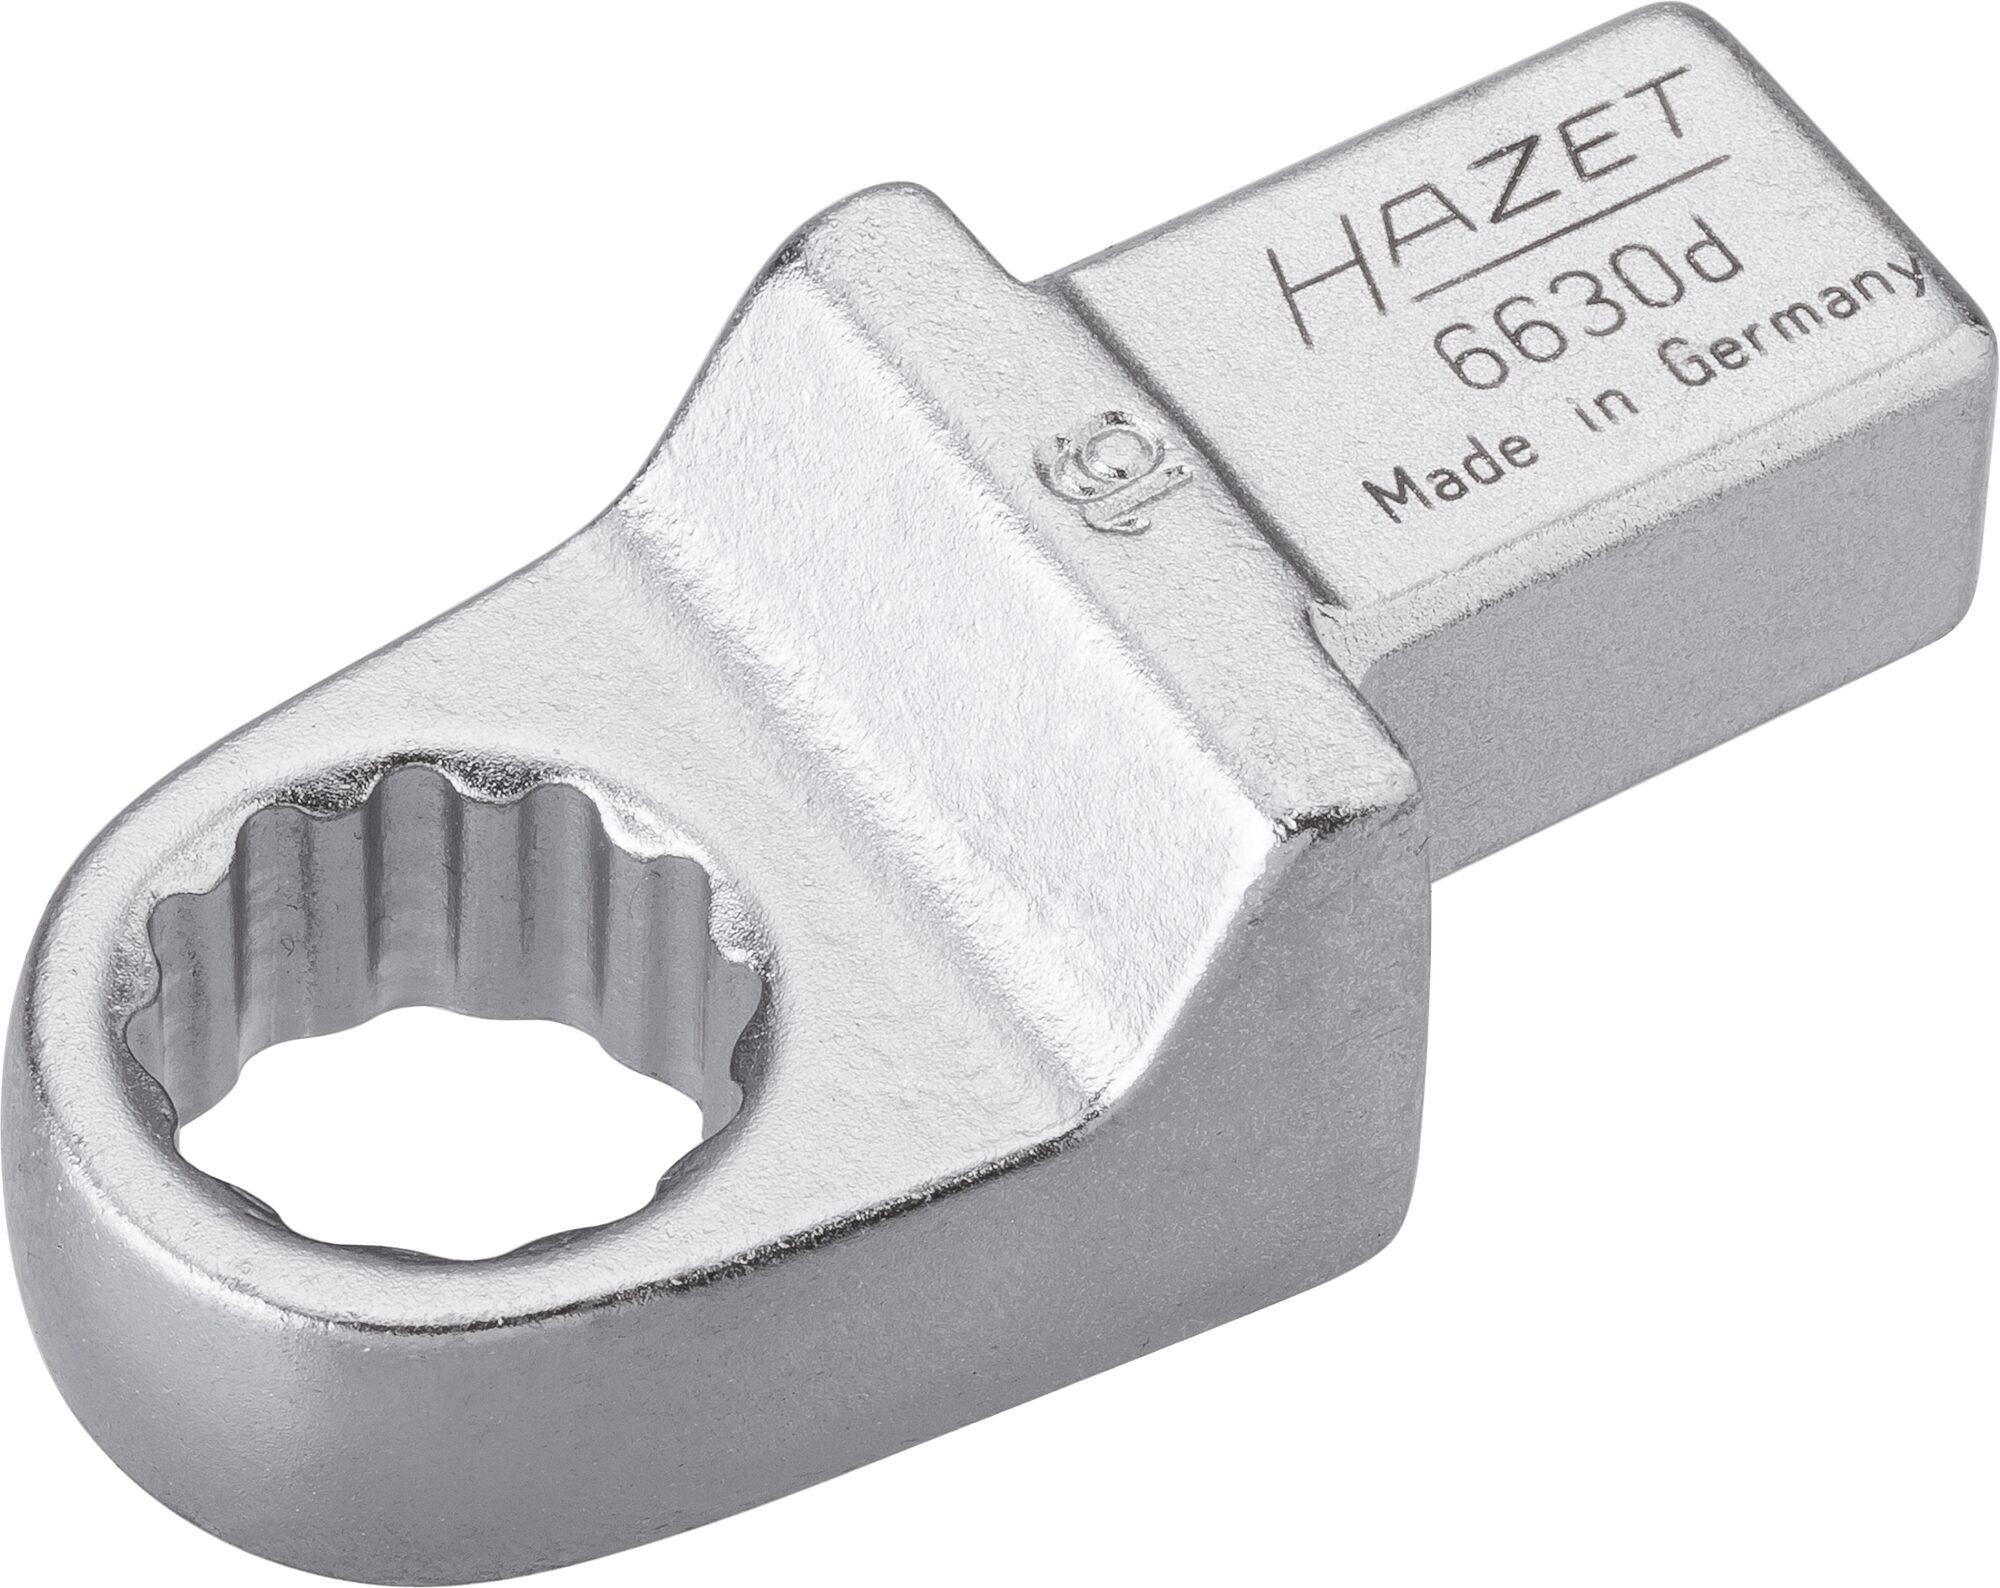 HAZET Einsteck-Ringschlüssel 6630D-16 · Einsteck-Vierkant 14 x 18 mm · Außen Doppel-Sechskant-Tractionsprofil · 16 mm